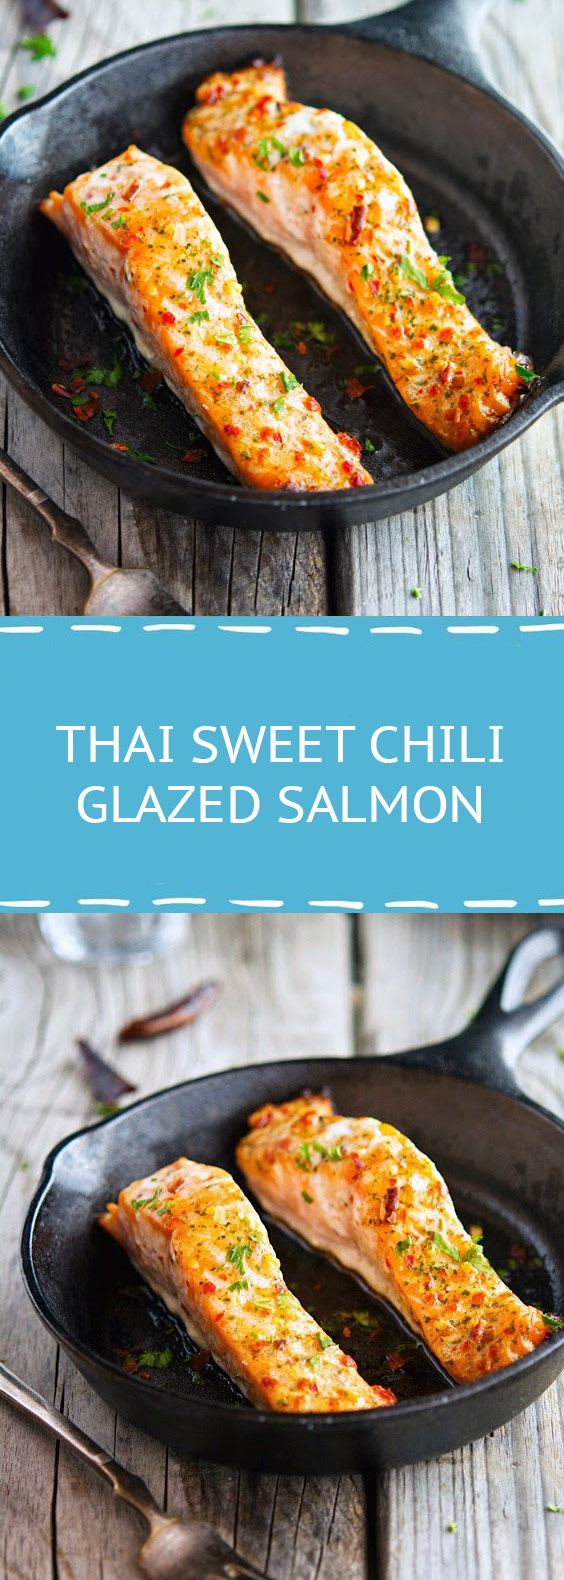 Thai Sweet Chili Glazed Salmon